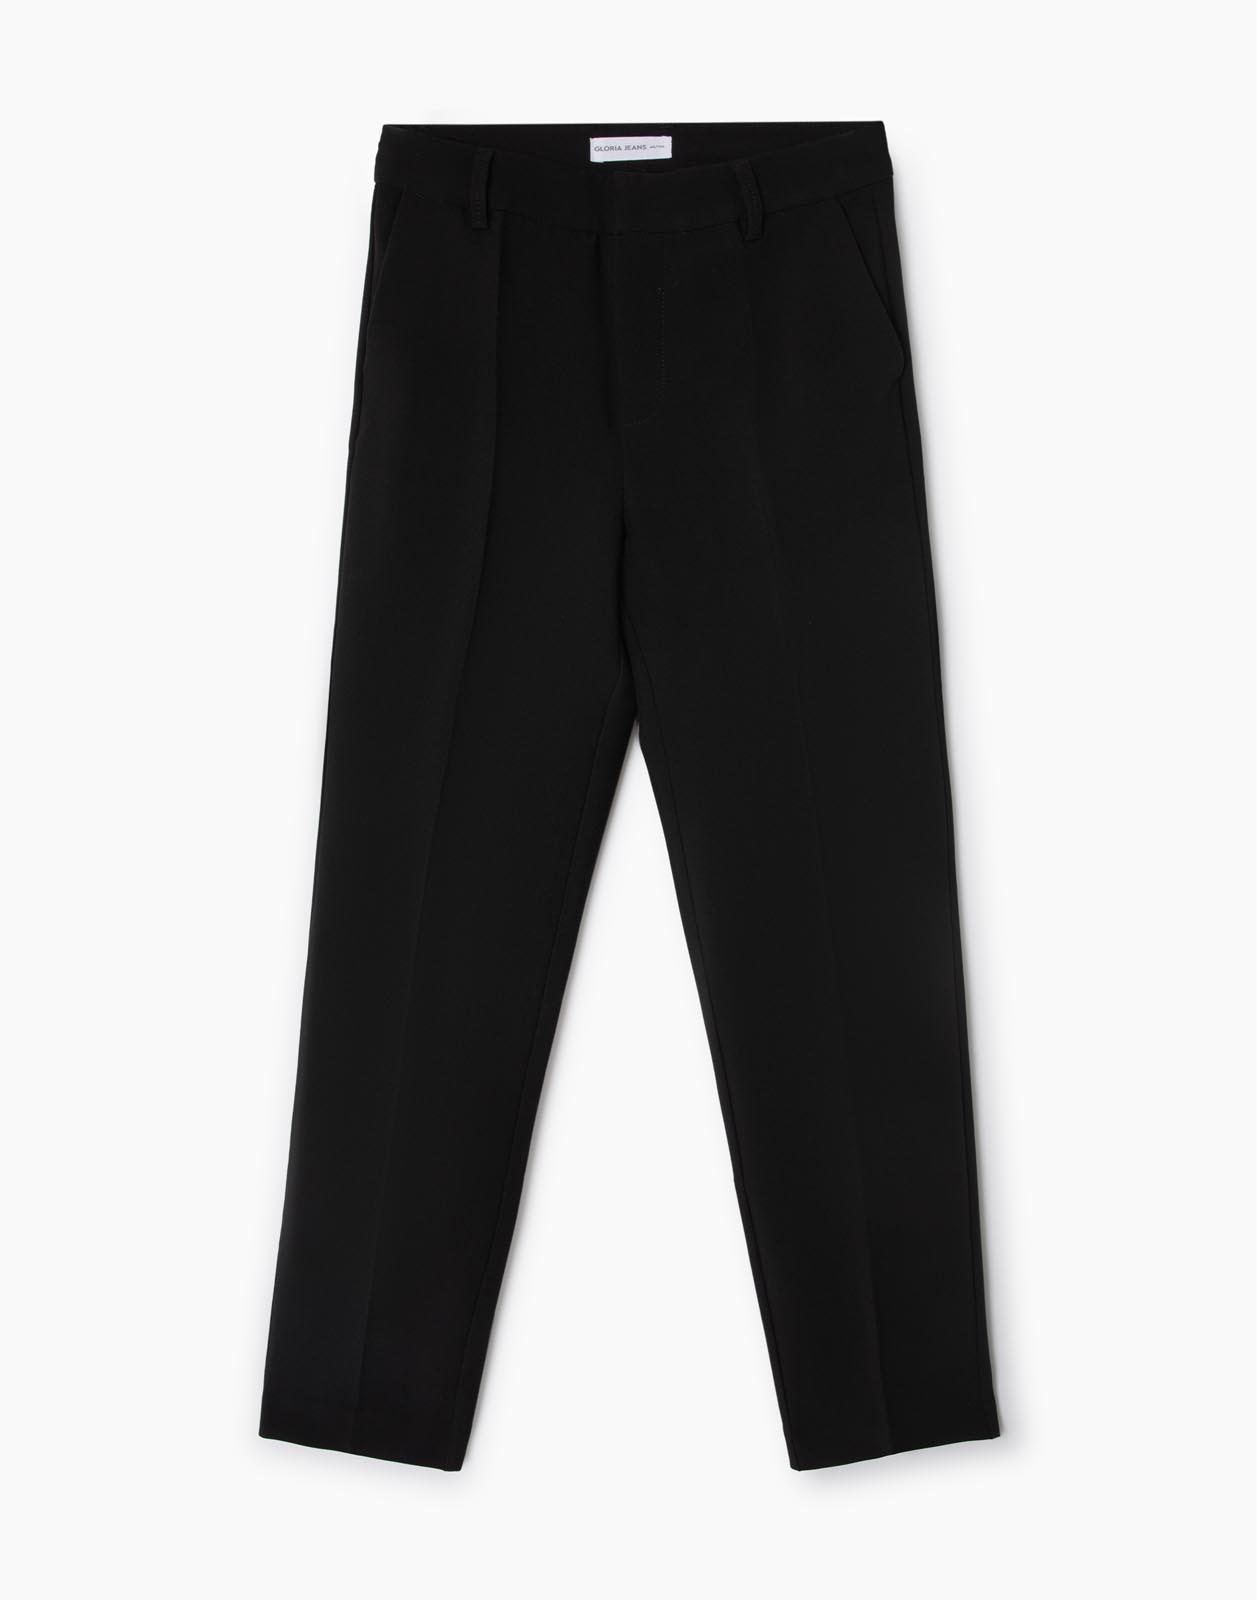 Брюки женские Gloria Jeans GPT009152 черные 50/170